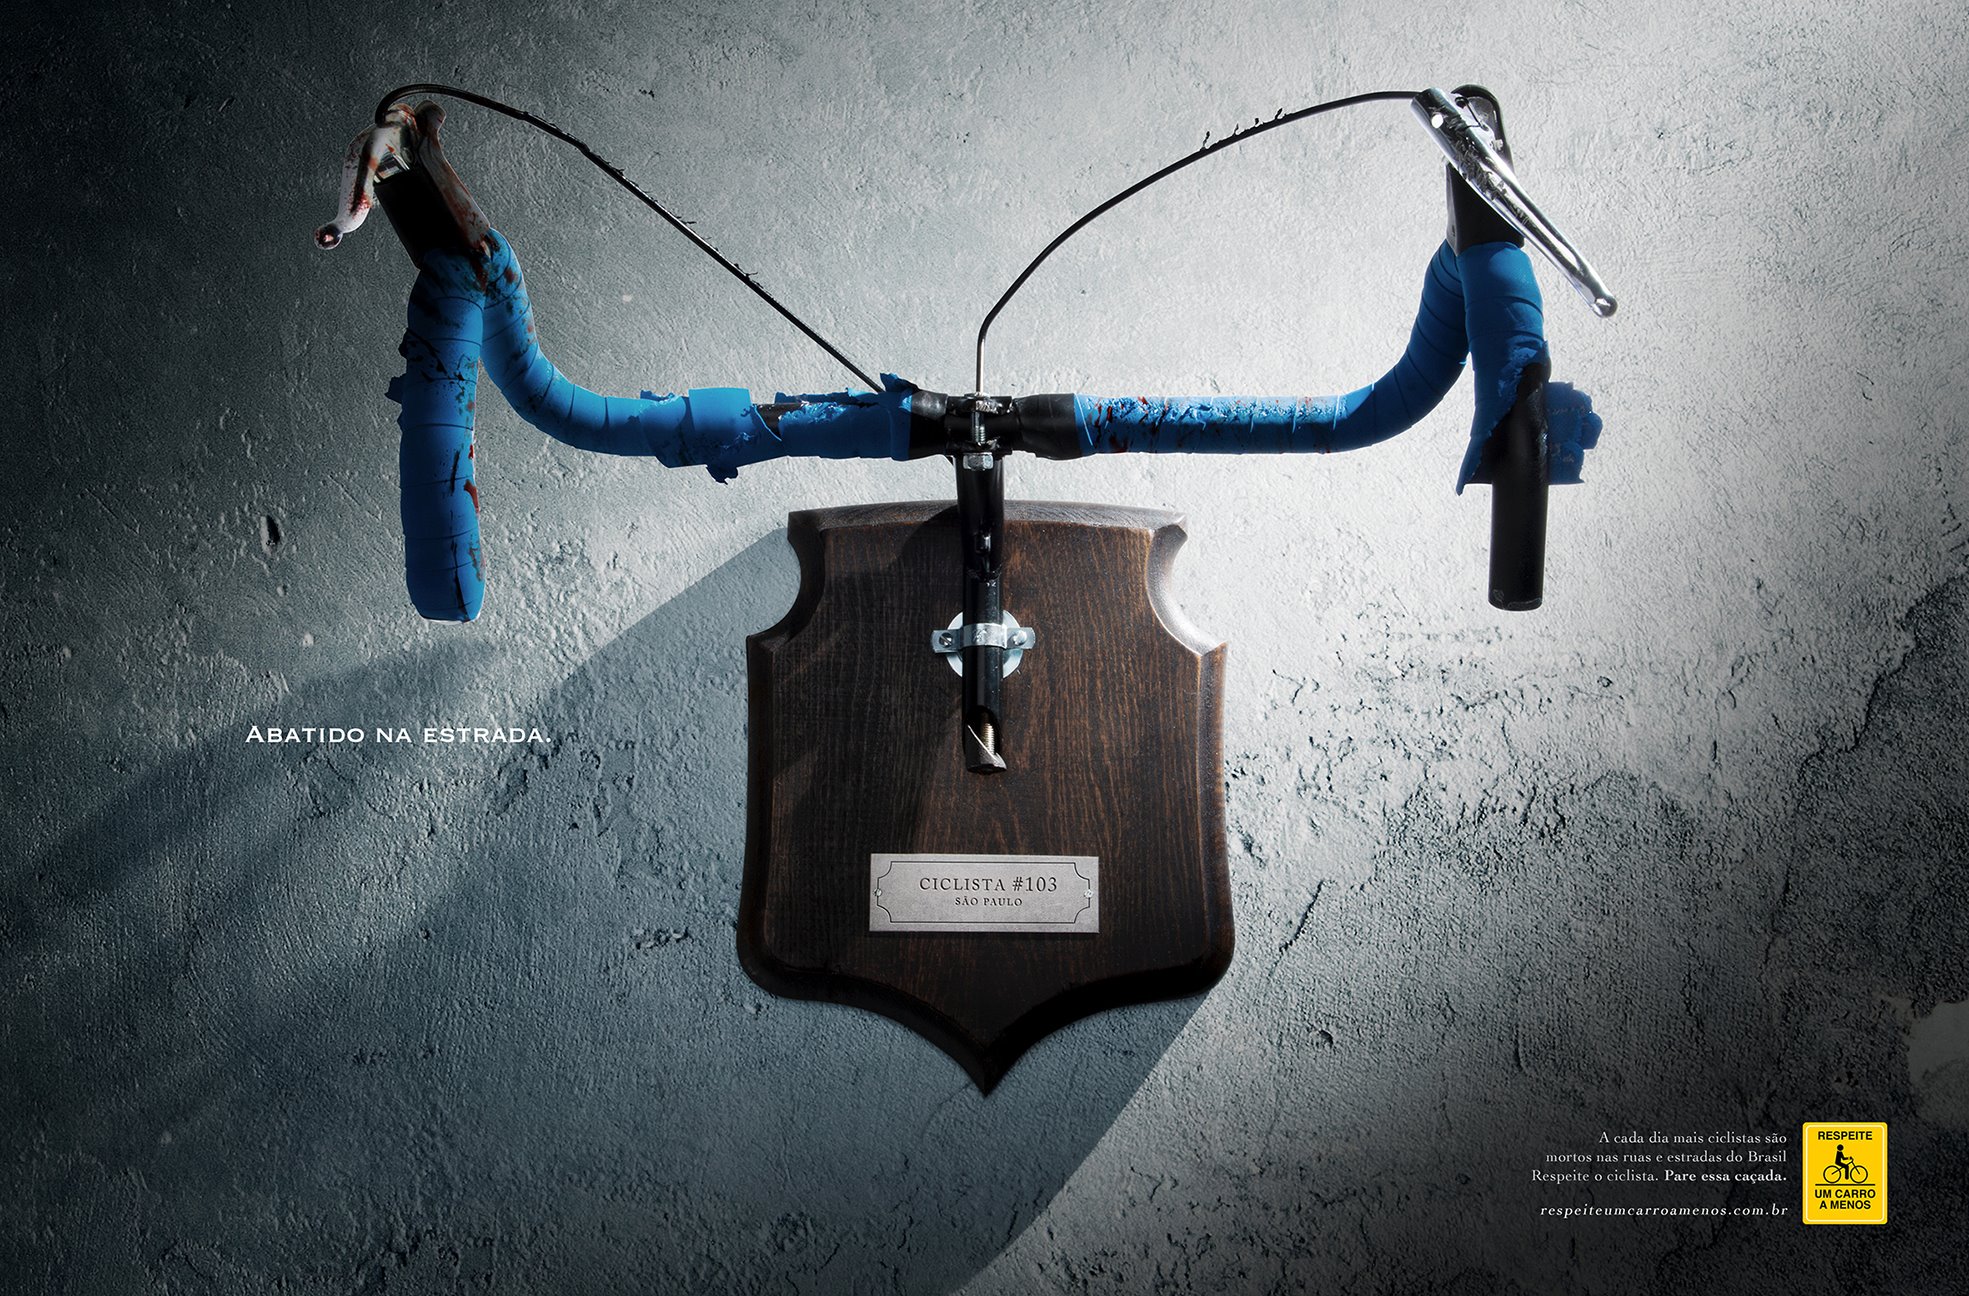 Социальная реклама в Бразилии: велоруль как охотничий трофей